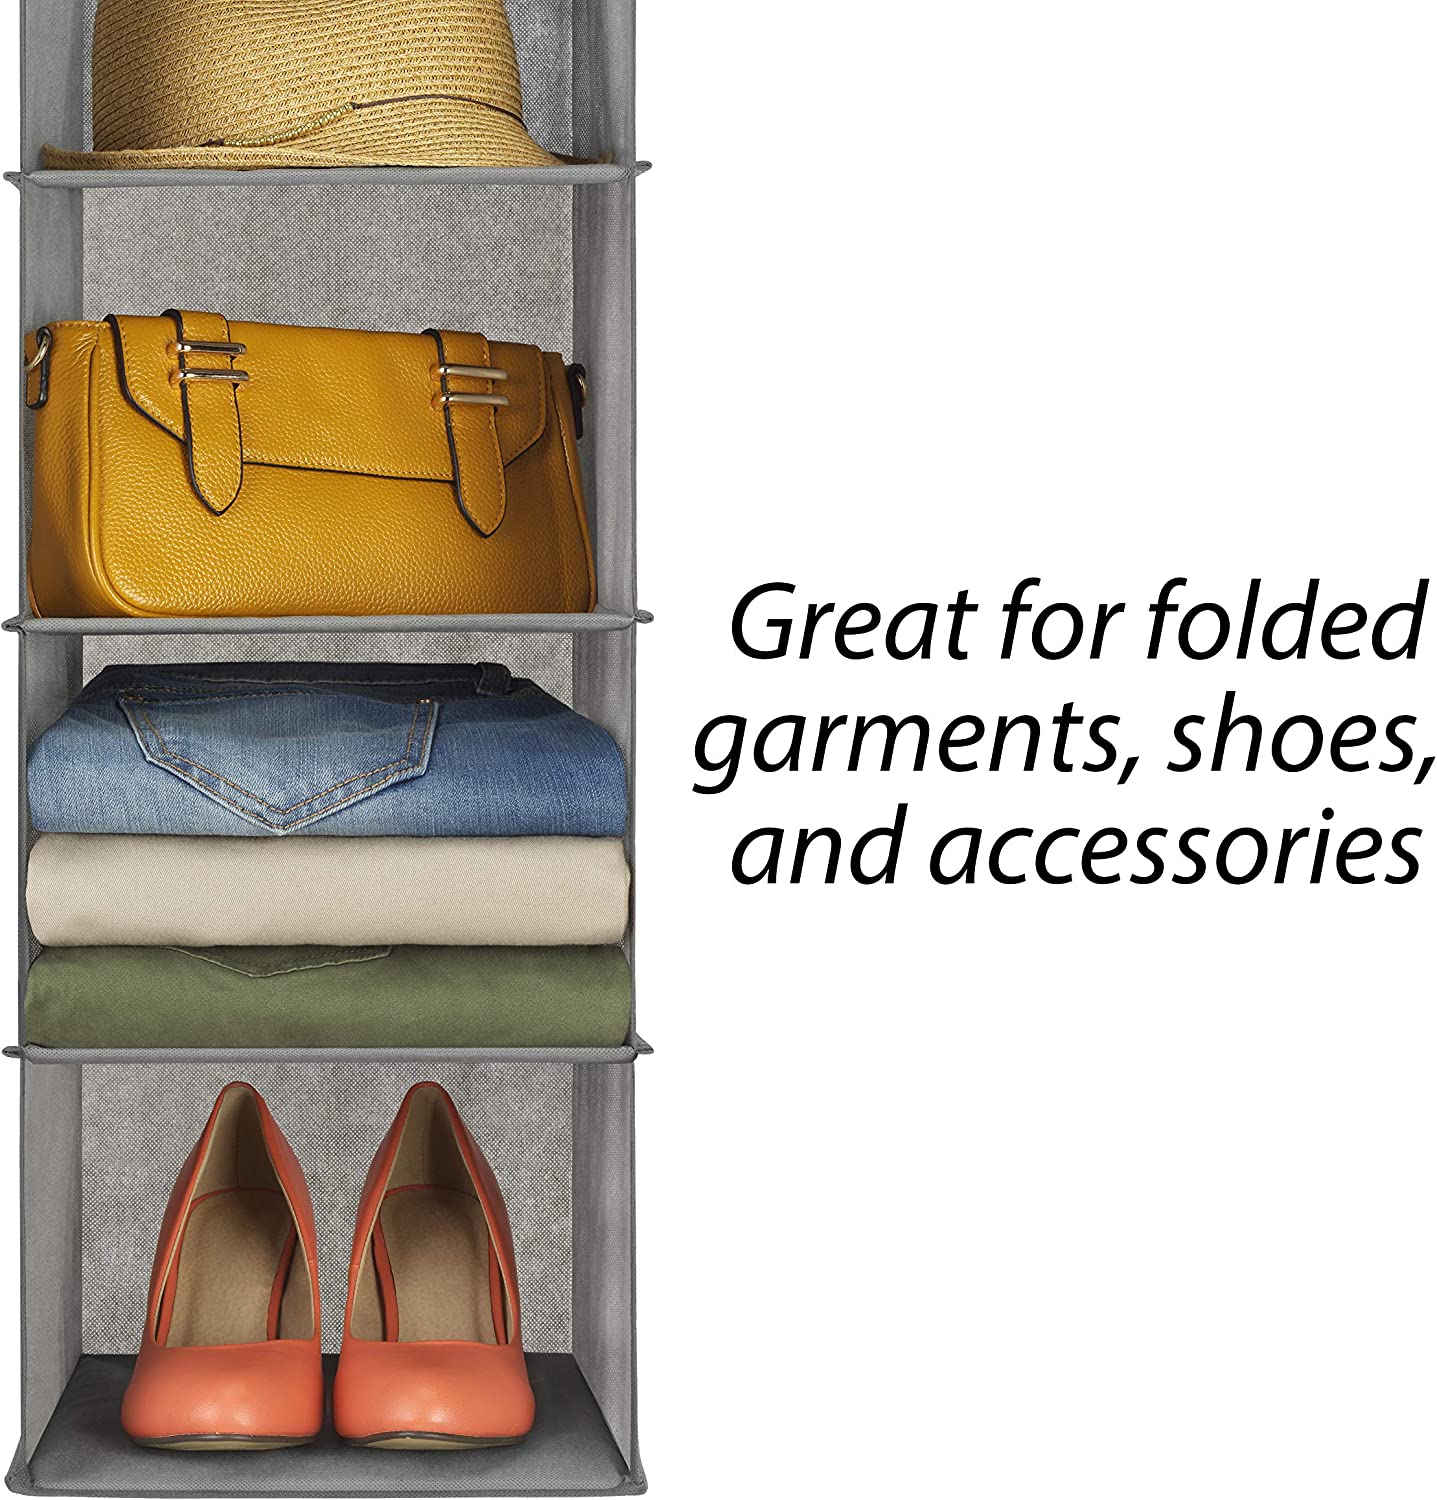 5 Tier Shelf Hanging Closet Organizer and Storage for Clothes (Grey)